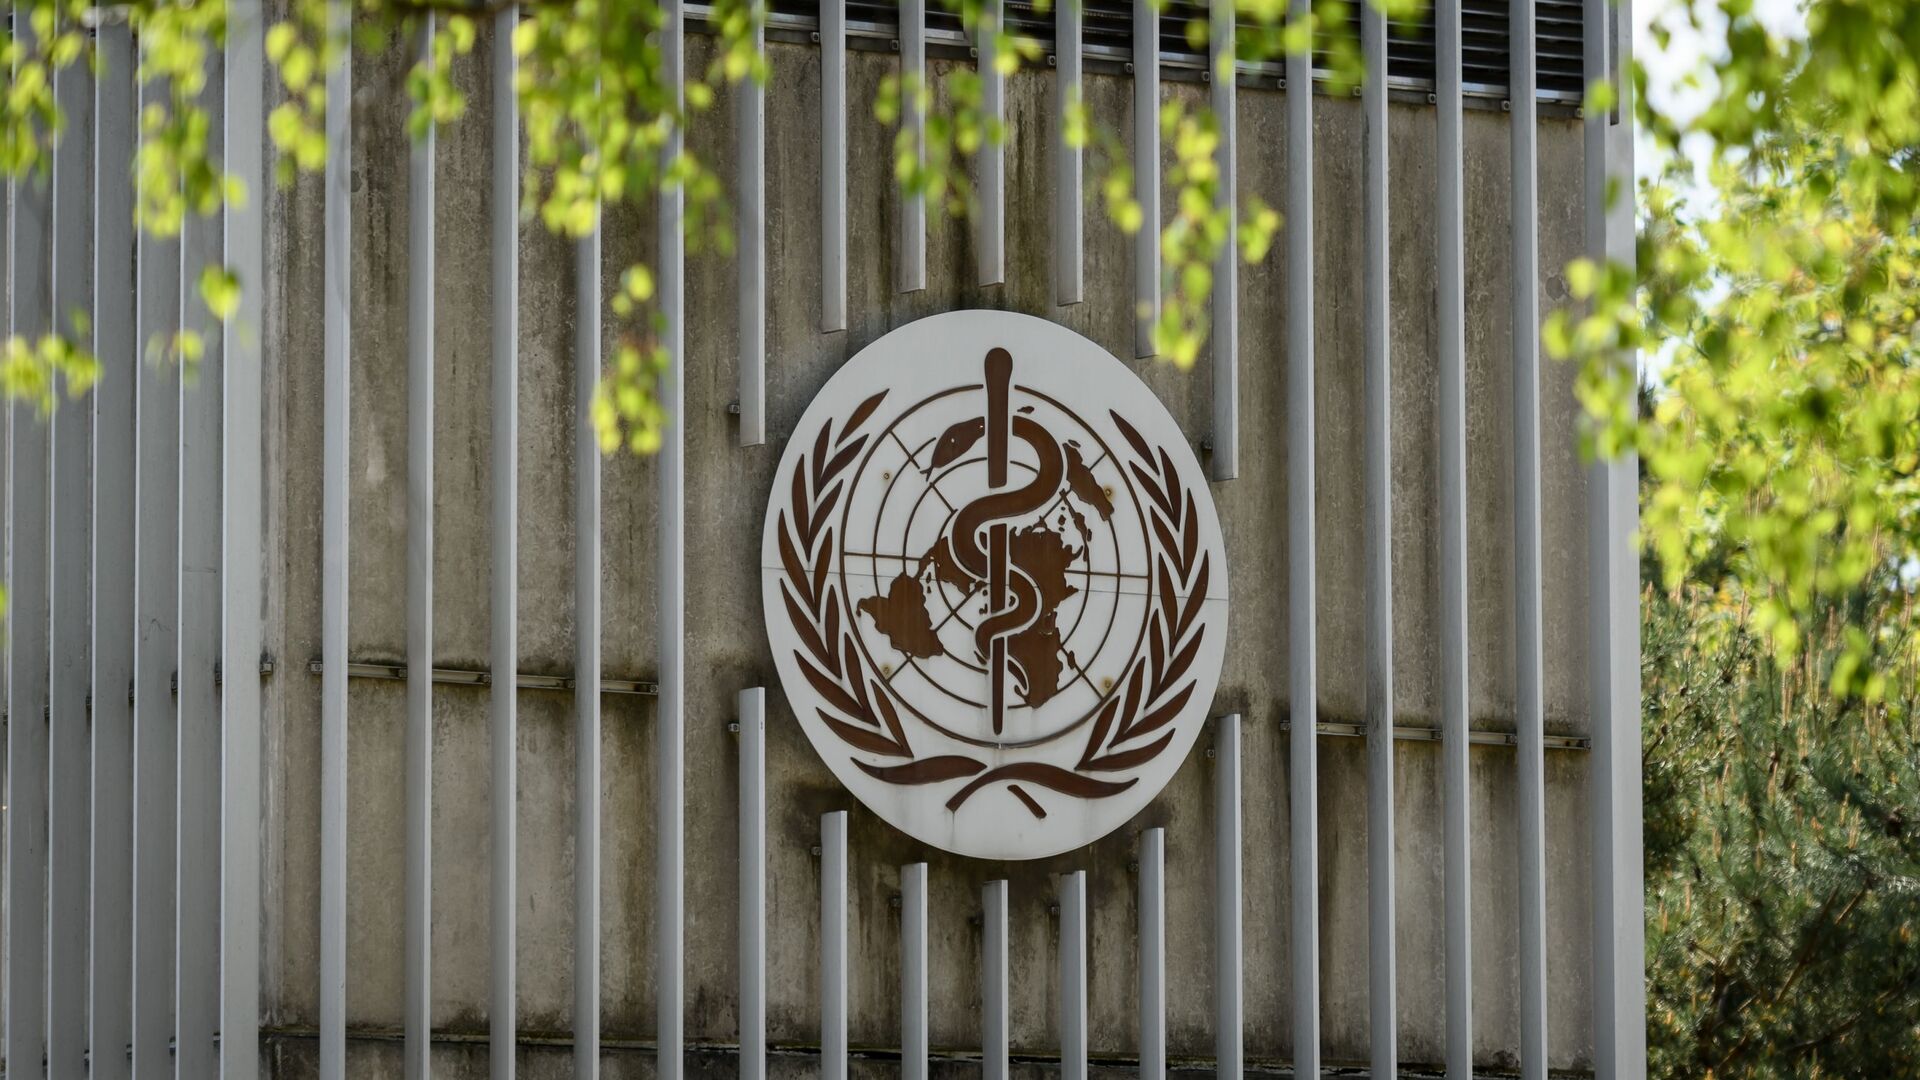 Всемирная организация здравоохранения - Sputnik Грузия, 1920, 29.11.2021